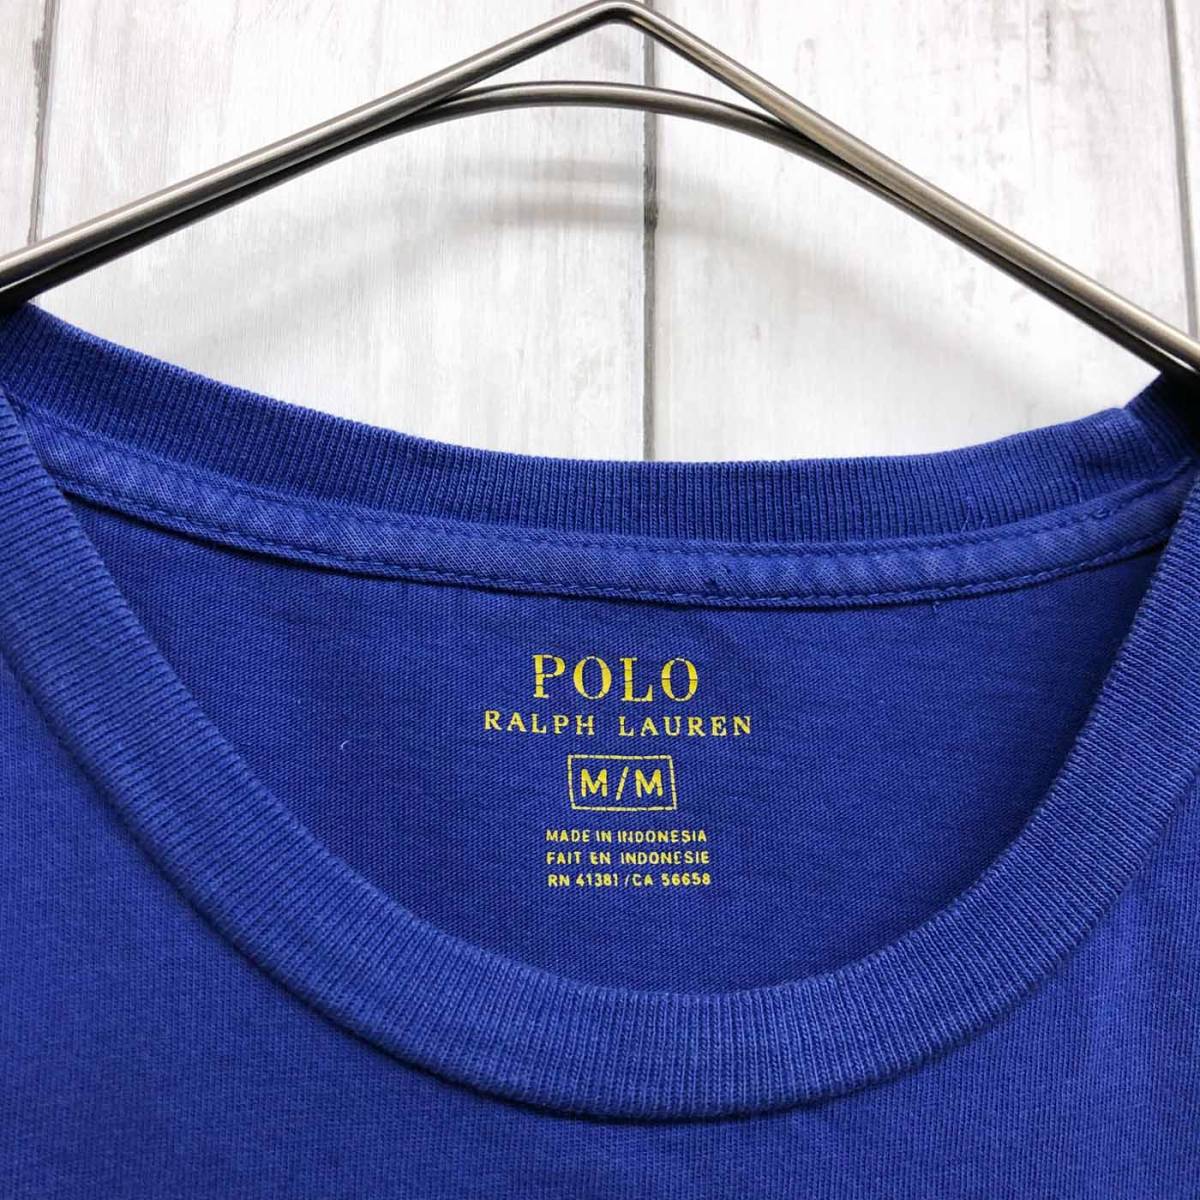 ラルフローレン POLO Ralph Lauren Polo 半袖シャツ メンズ ワンポイント Mサイズ 9-88_画像5